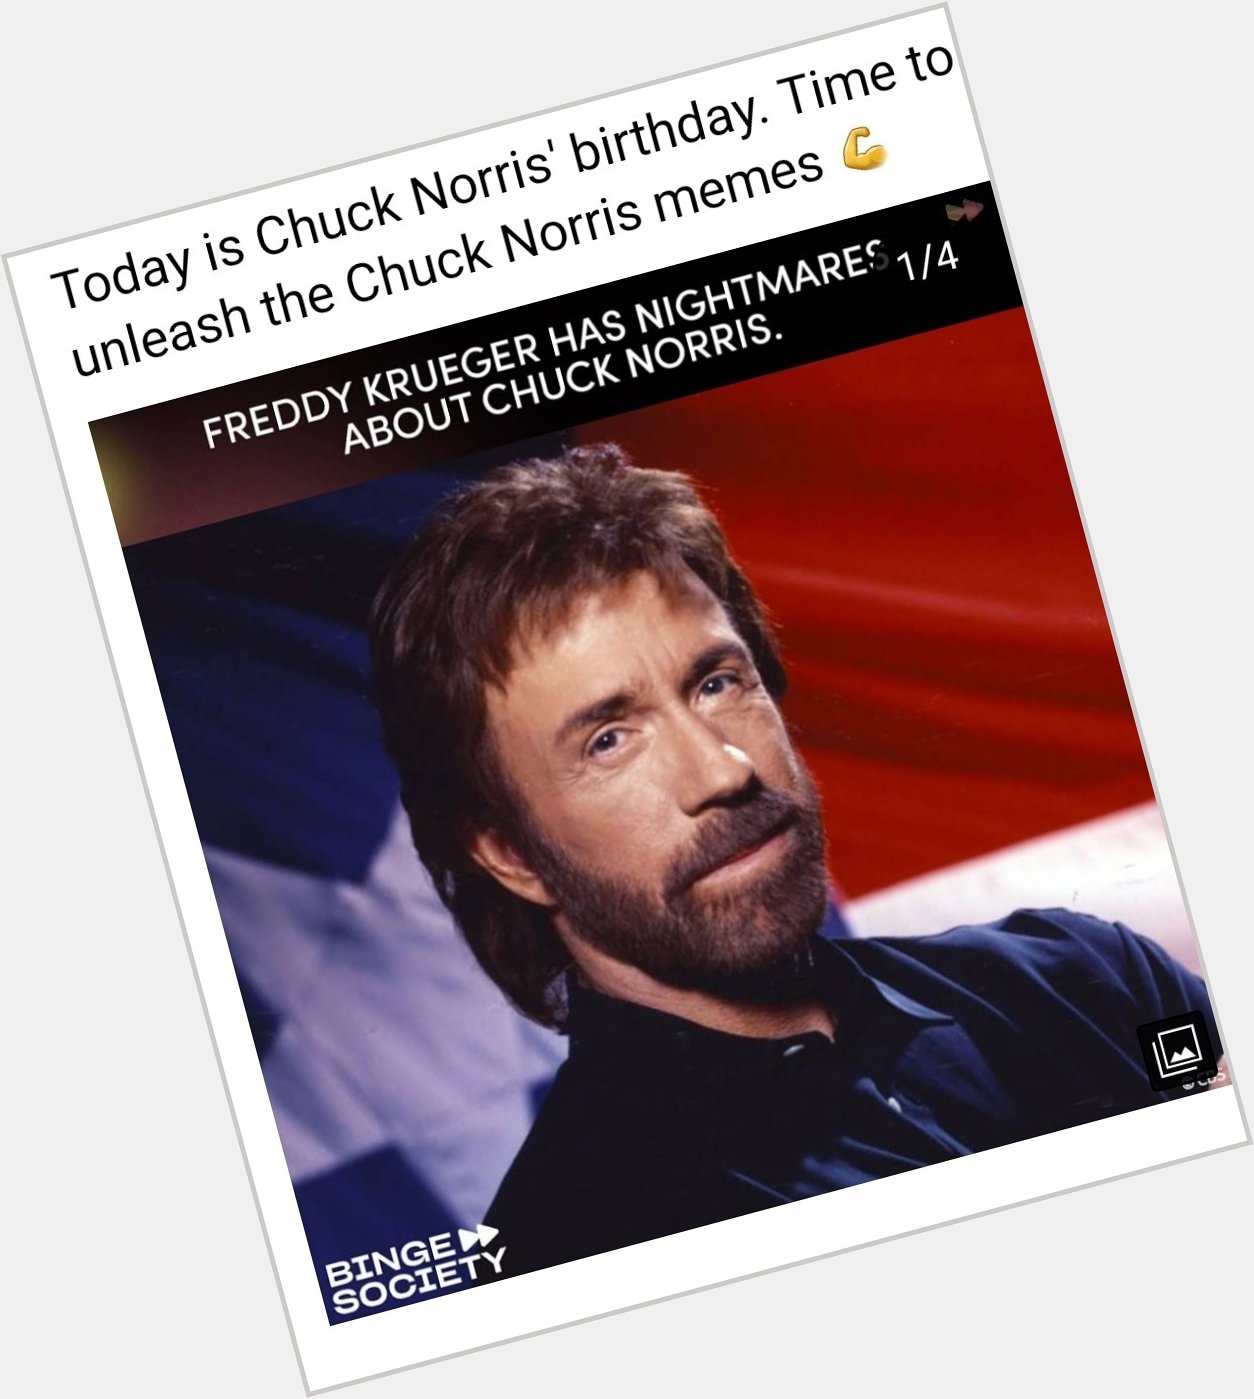 Happy birthday Chuck Norris!   